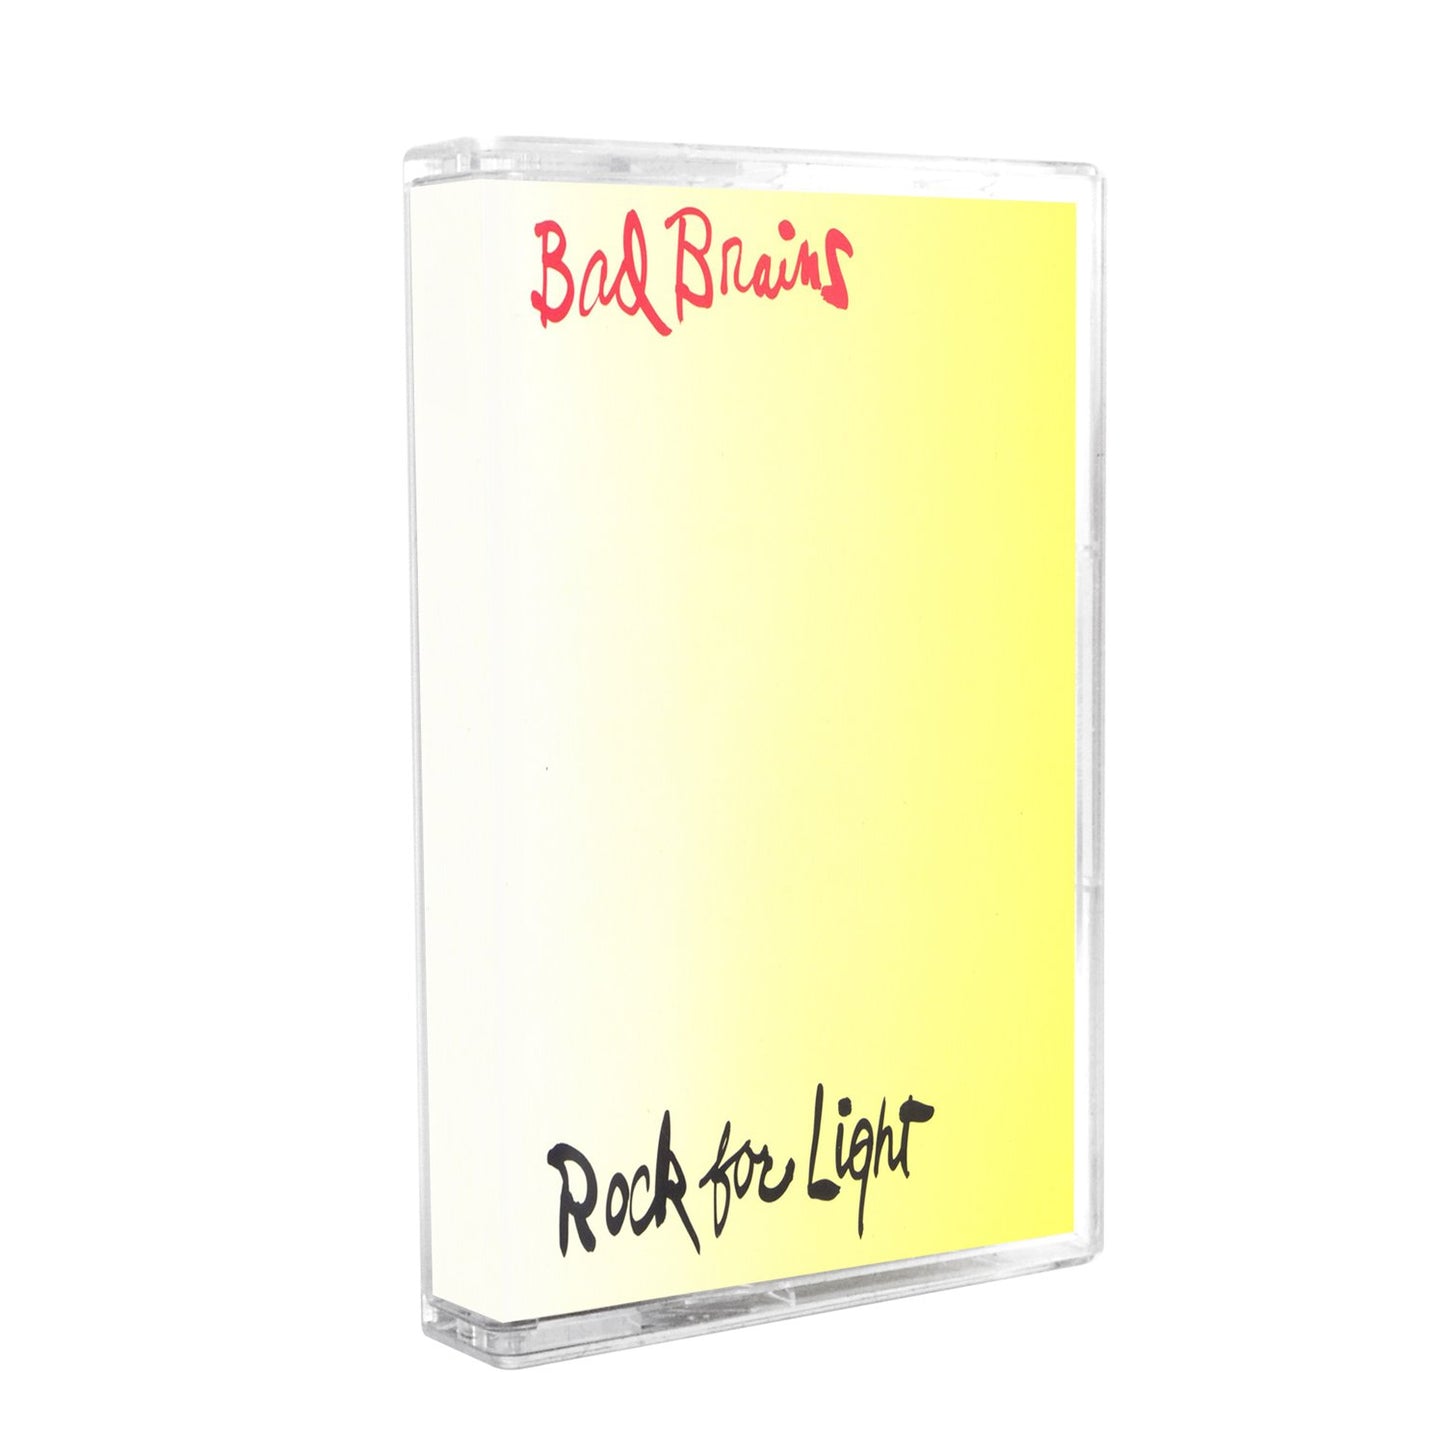 Bad Brains "Rock For Light" Cassette